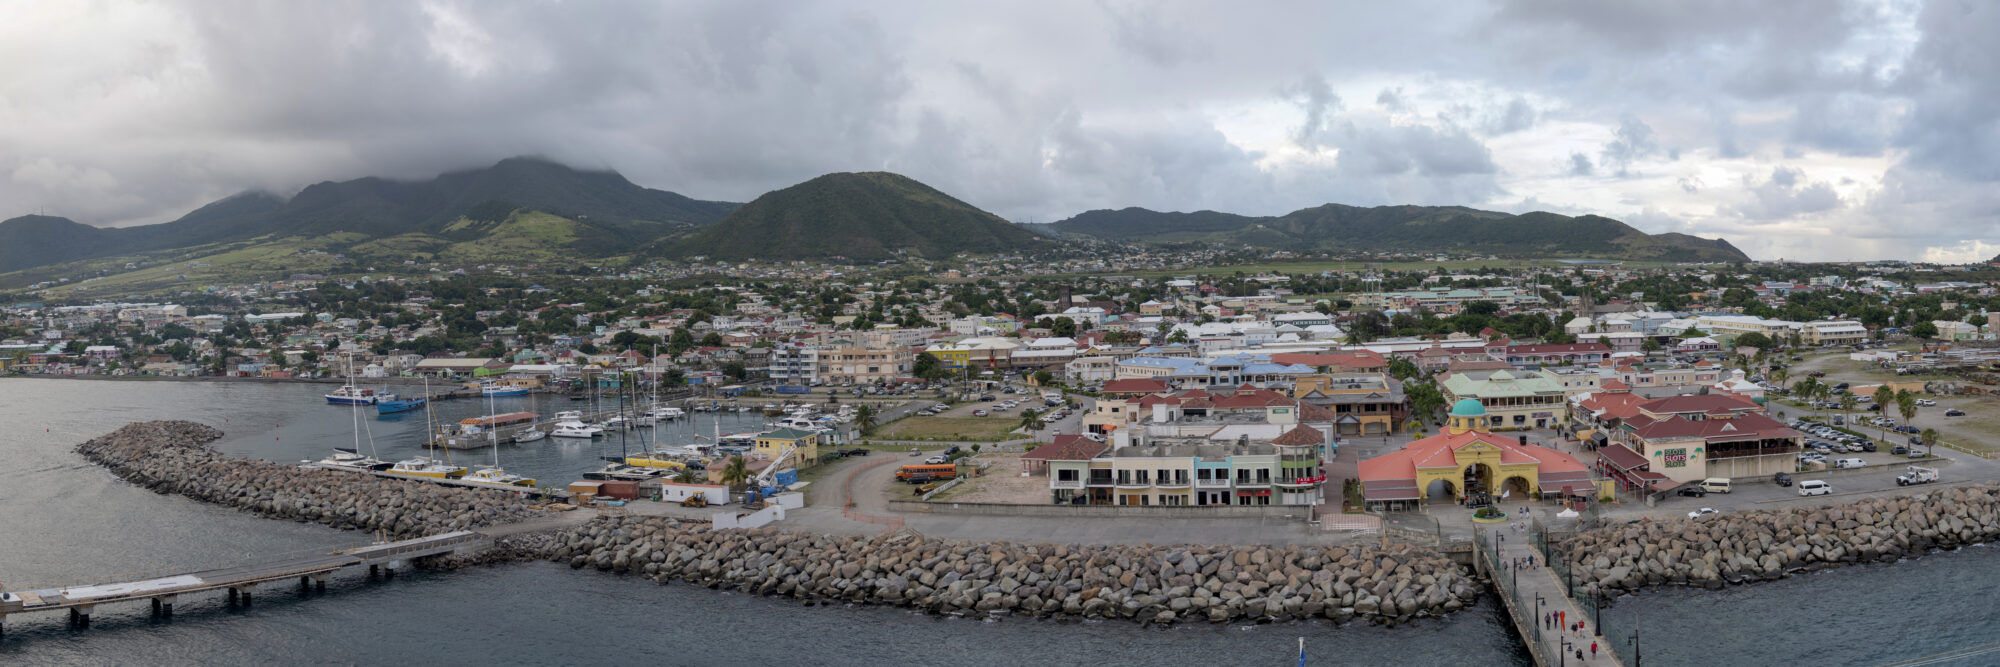 St. Kitts (2)